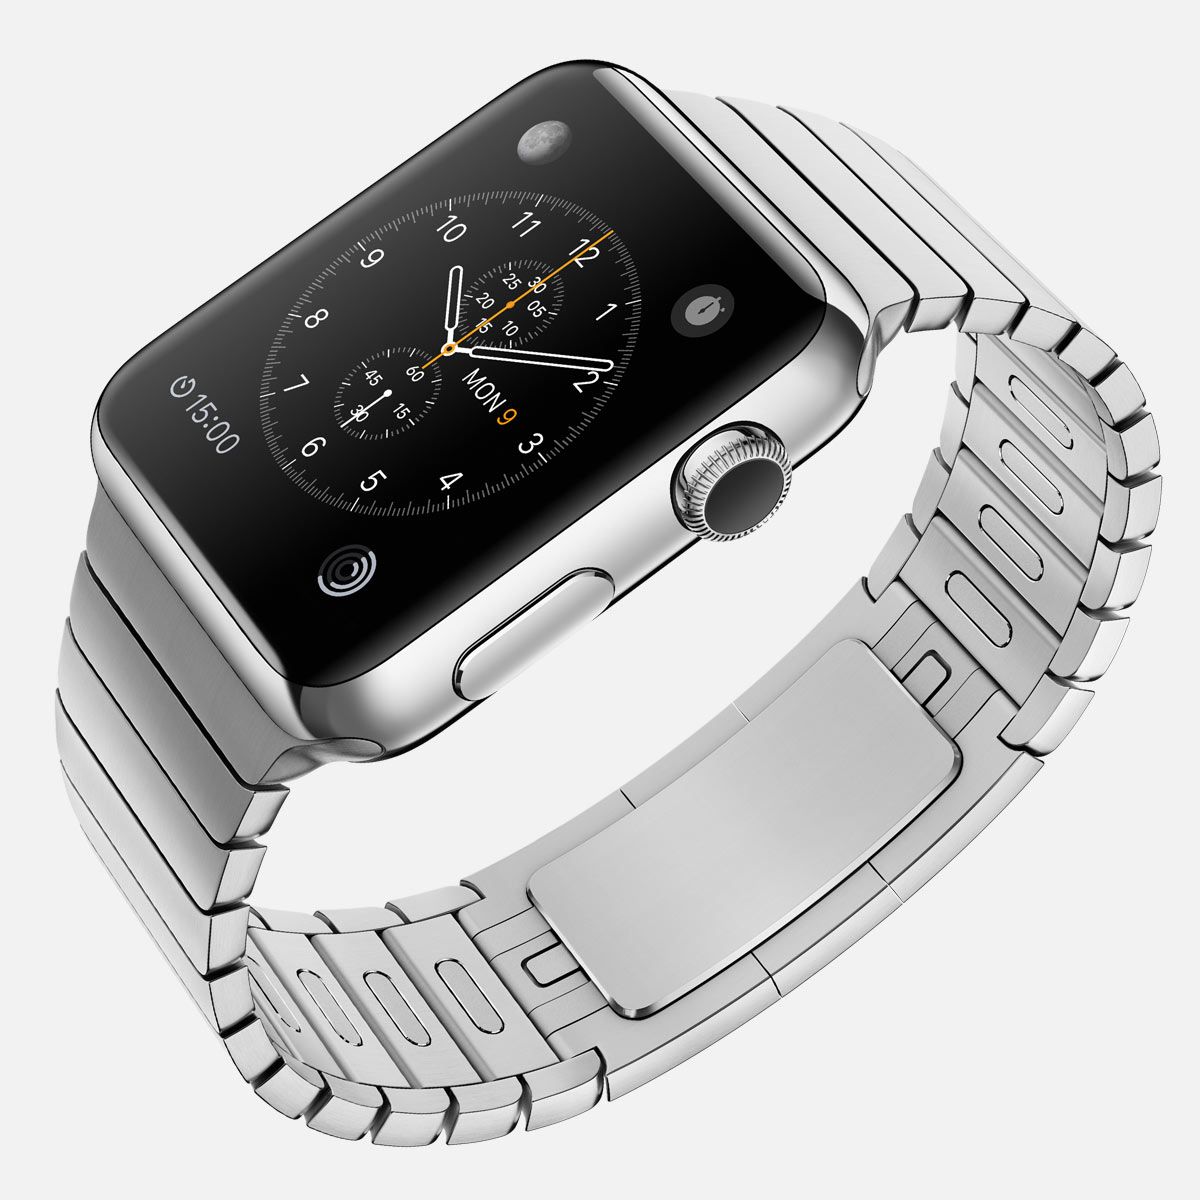 Apple Watch w kopercie stalowej (zdjęcie Apple)